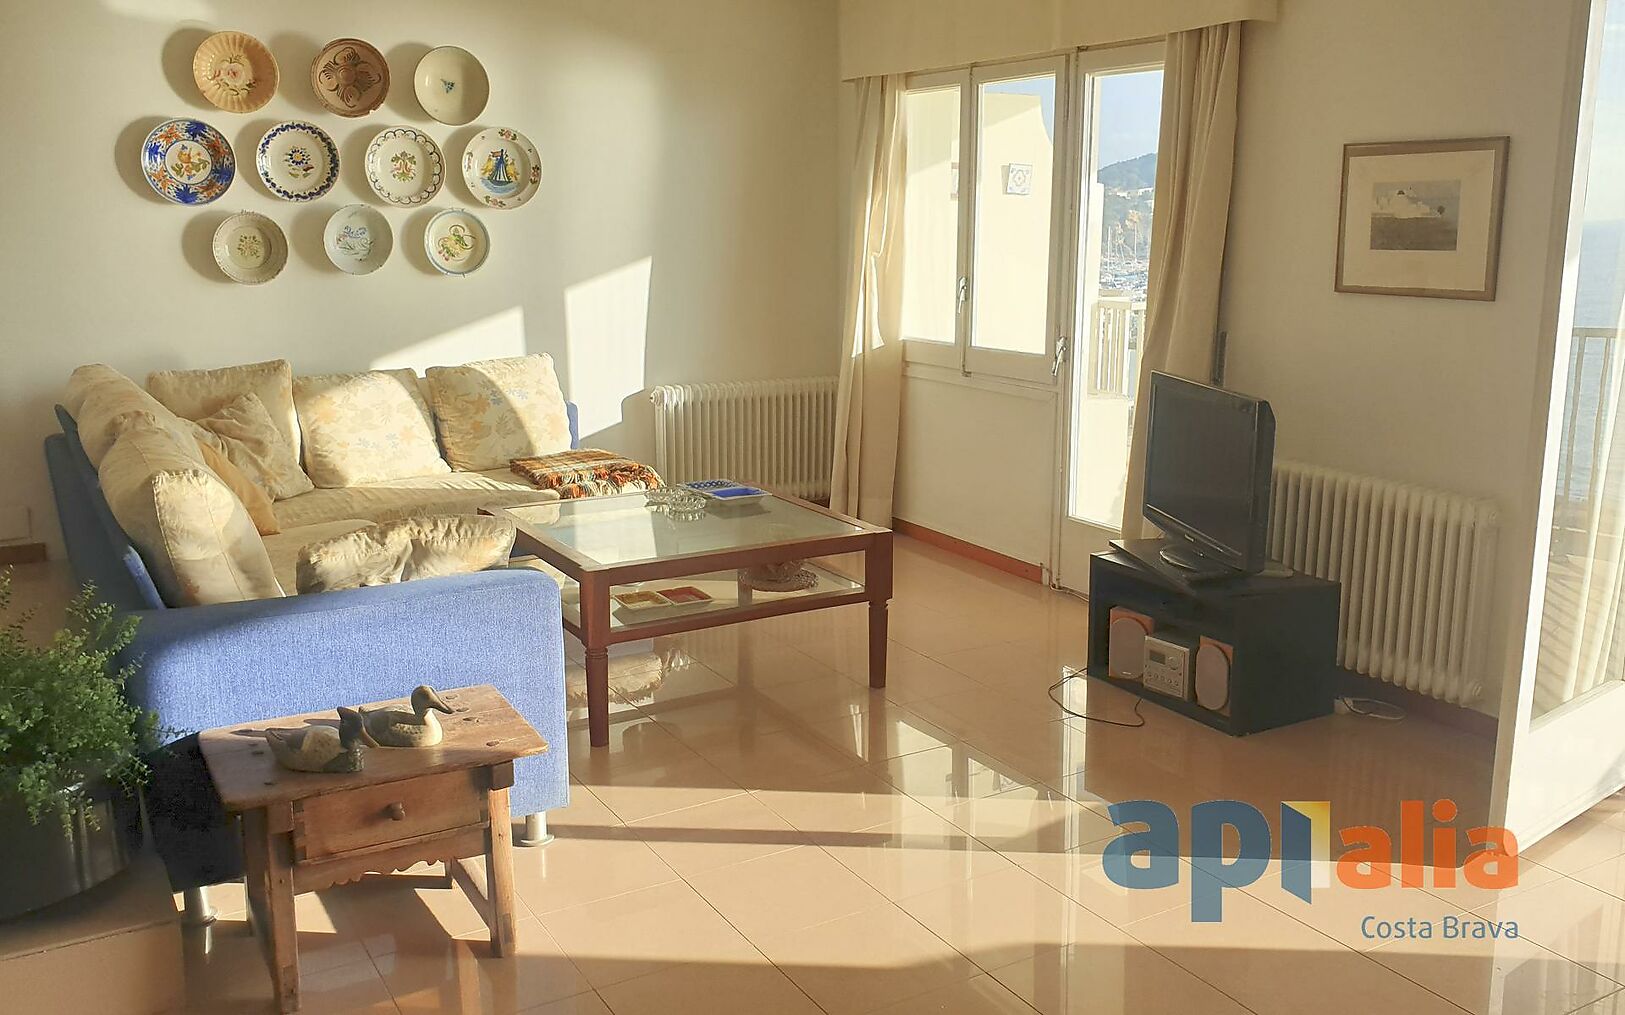 Precioso piso de 3 dormitorios con vistas al mar en Palamós.